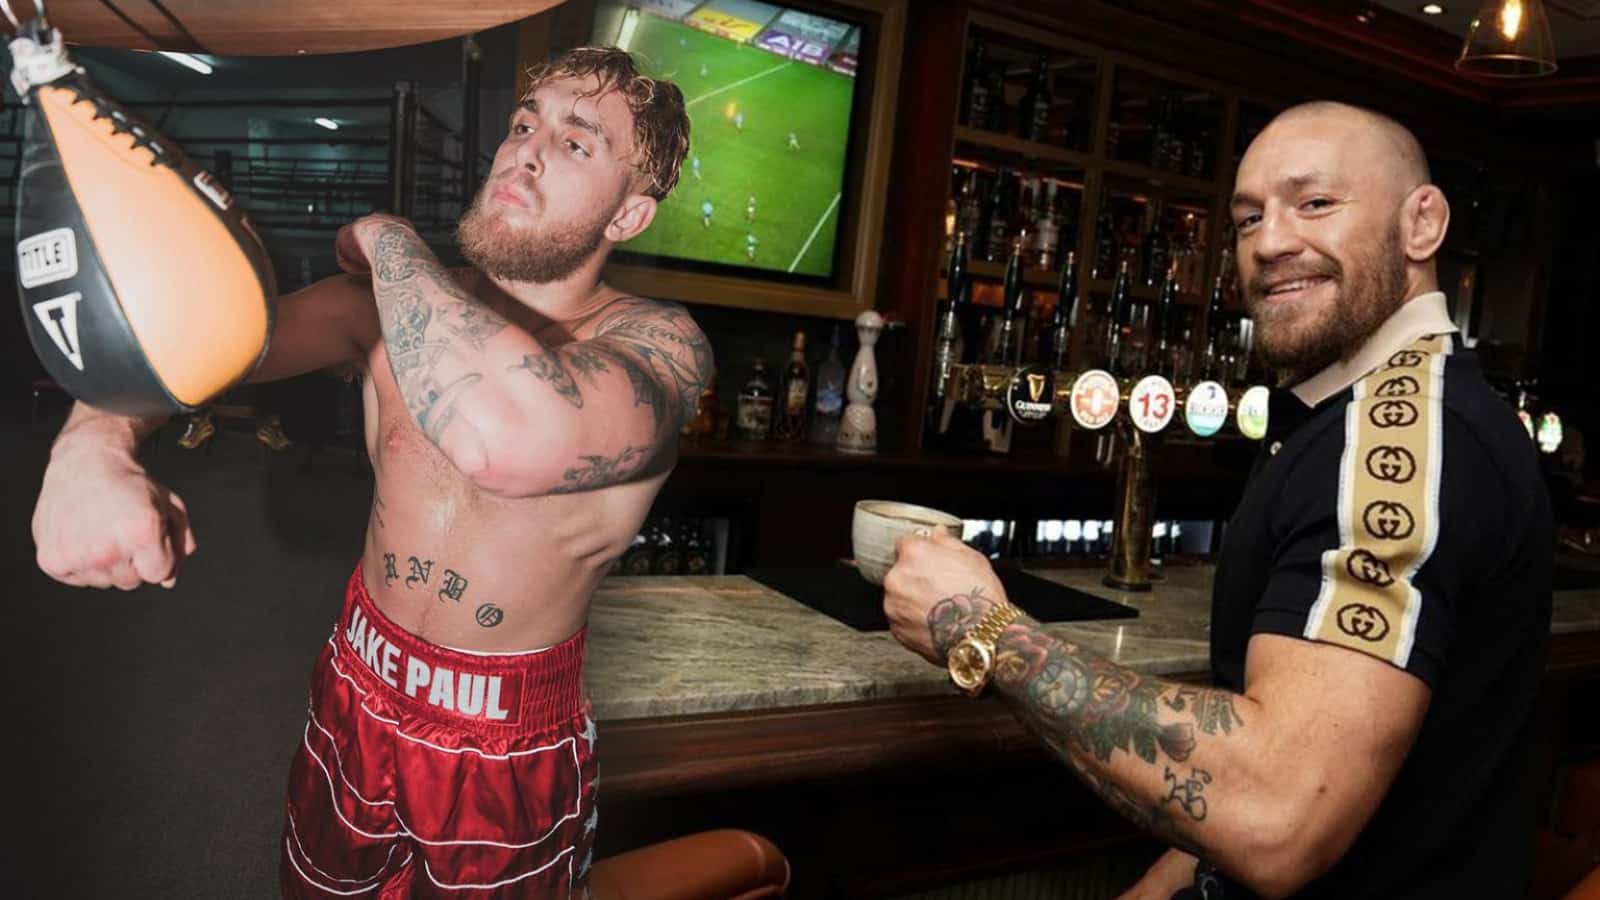 Jake Paul versus conor mcgregor in boxing